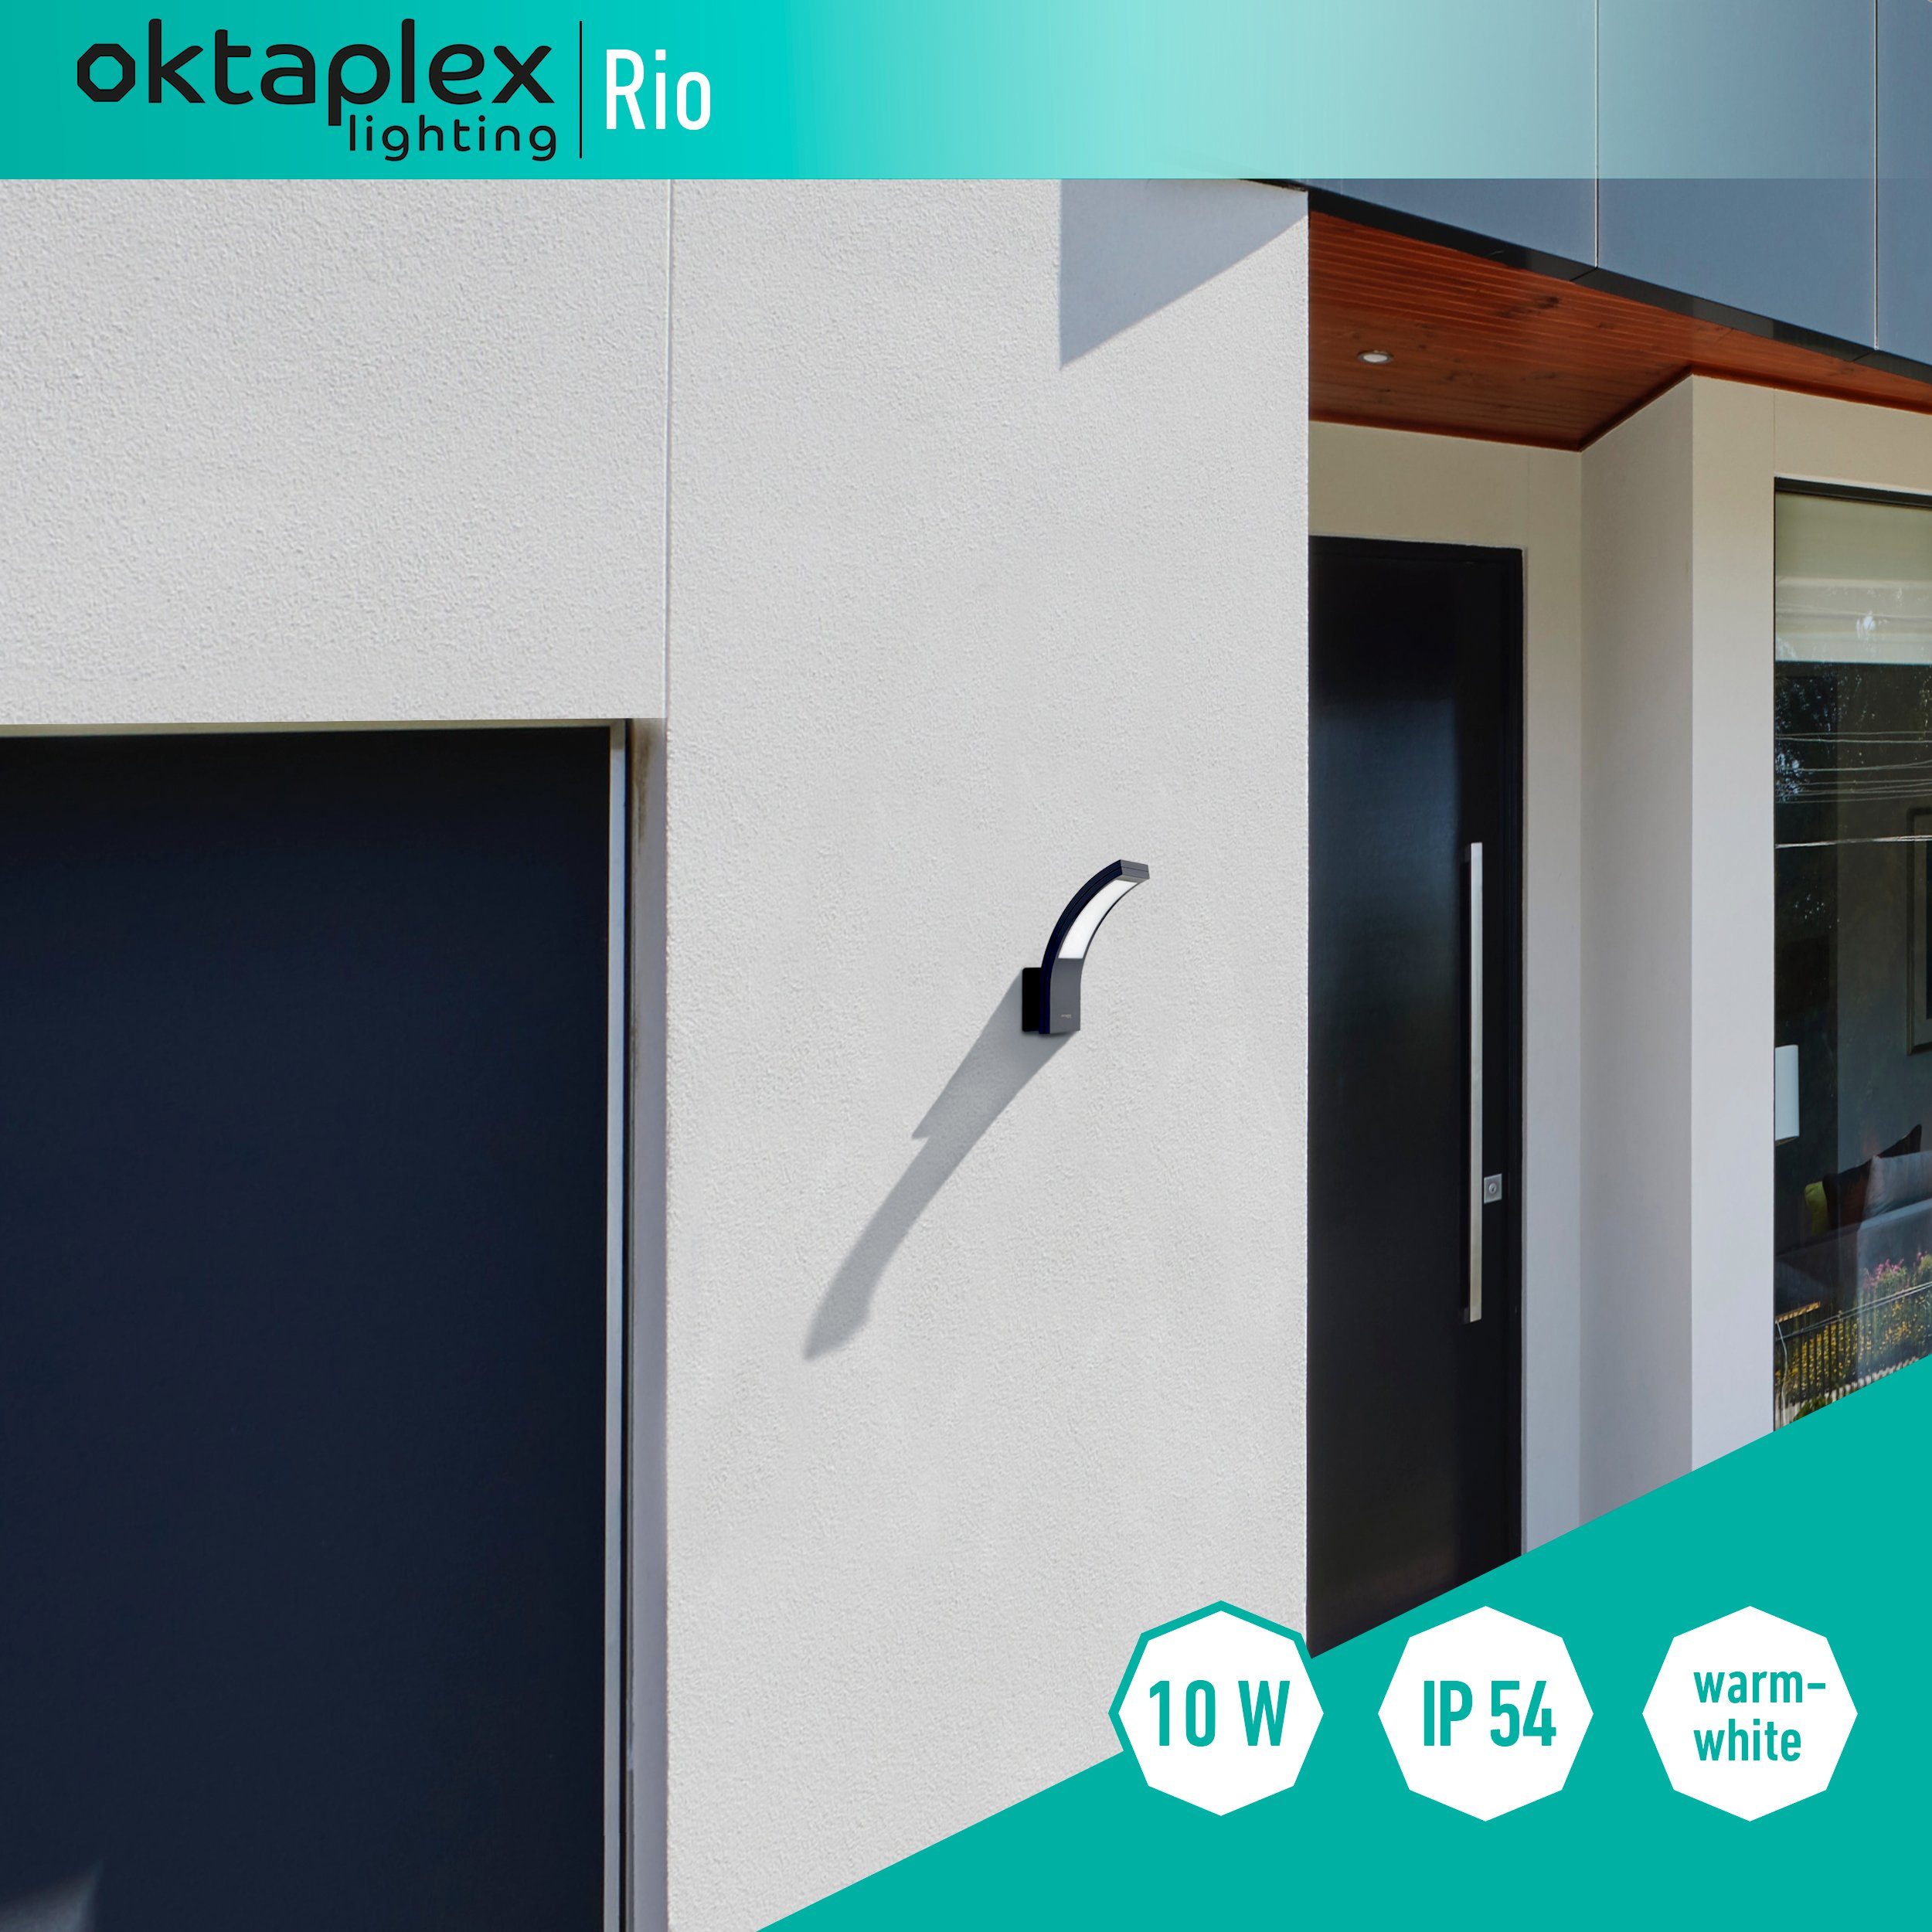 LED Rio 10W, Oktaplex Wandleuchte LED Außenbeleuchtung Warmweiß, 750lm Außen-Wandleuchte IP54 lighting anthrazit fest integriert, Diffusor, 3000K